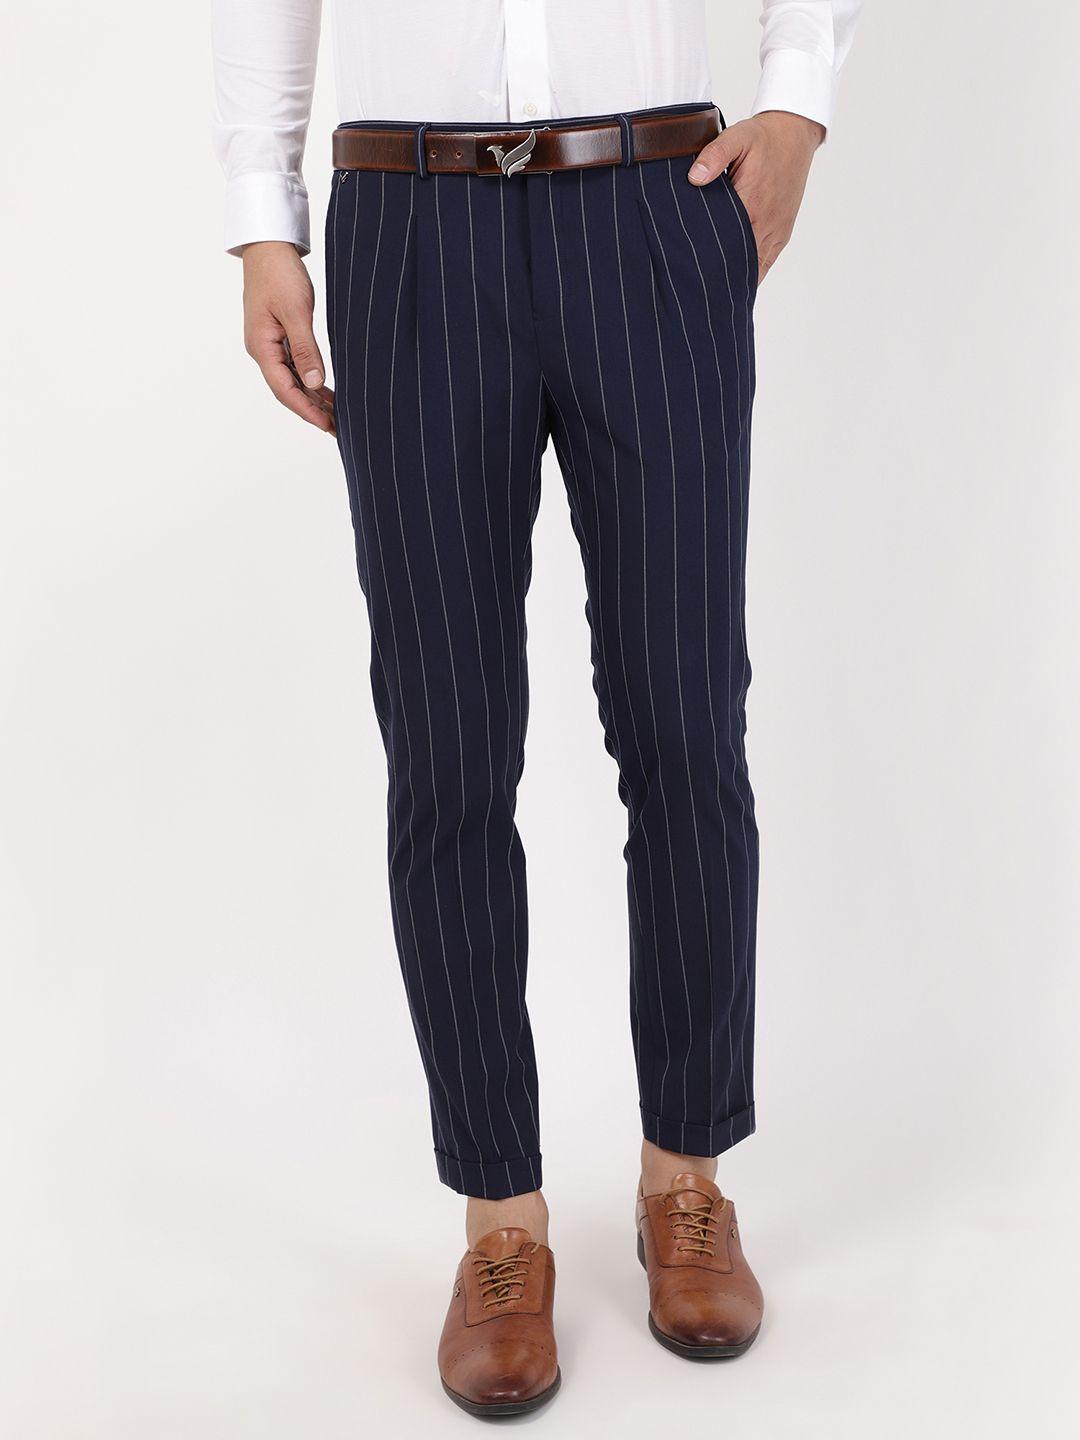 blackberrys men navy blue striped loose fit formal trousers